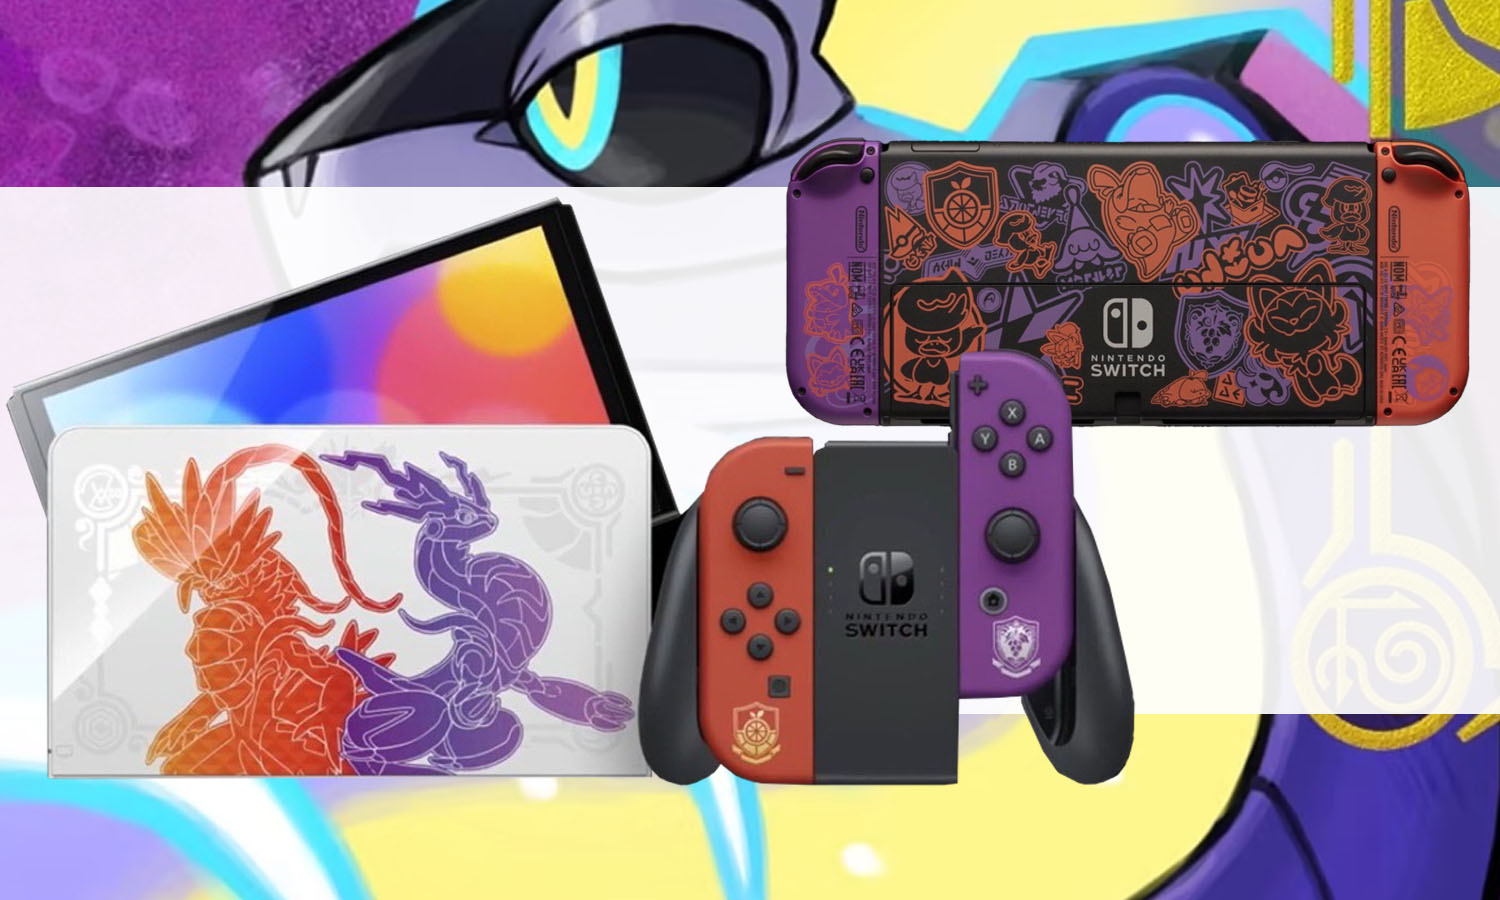 Acheter Pokémon Violet (Nintendo Switch) - Jeu numérique pas cher